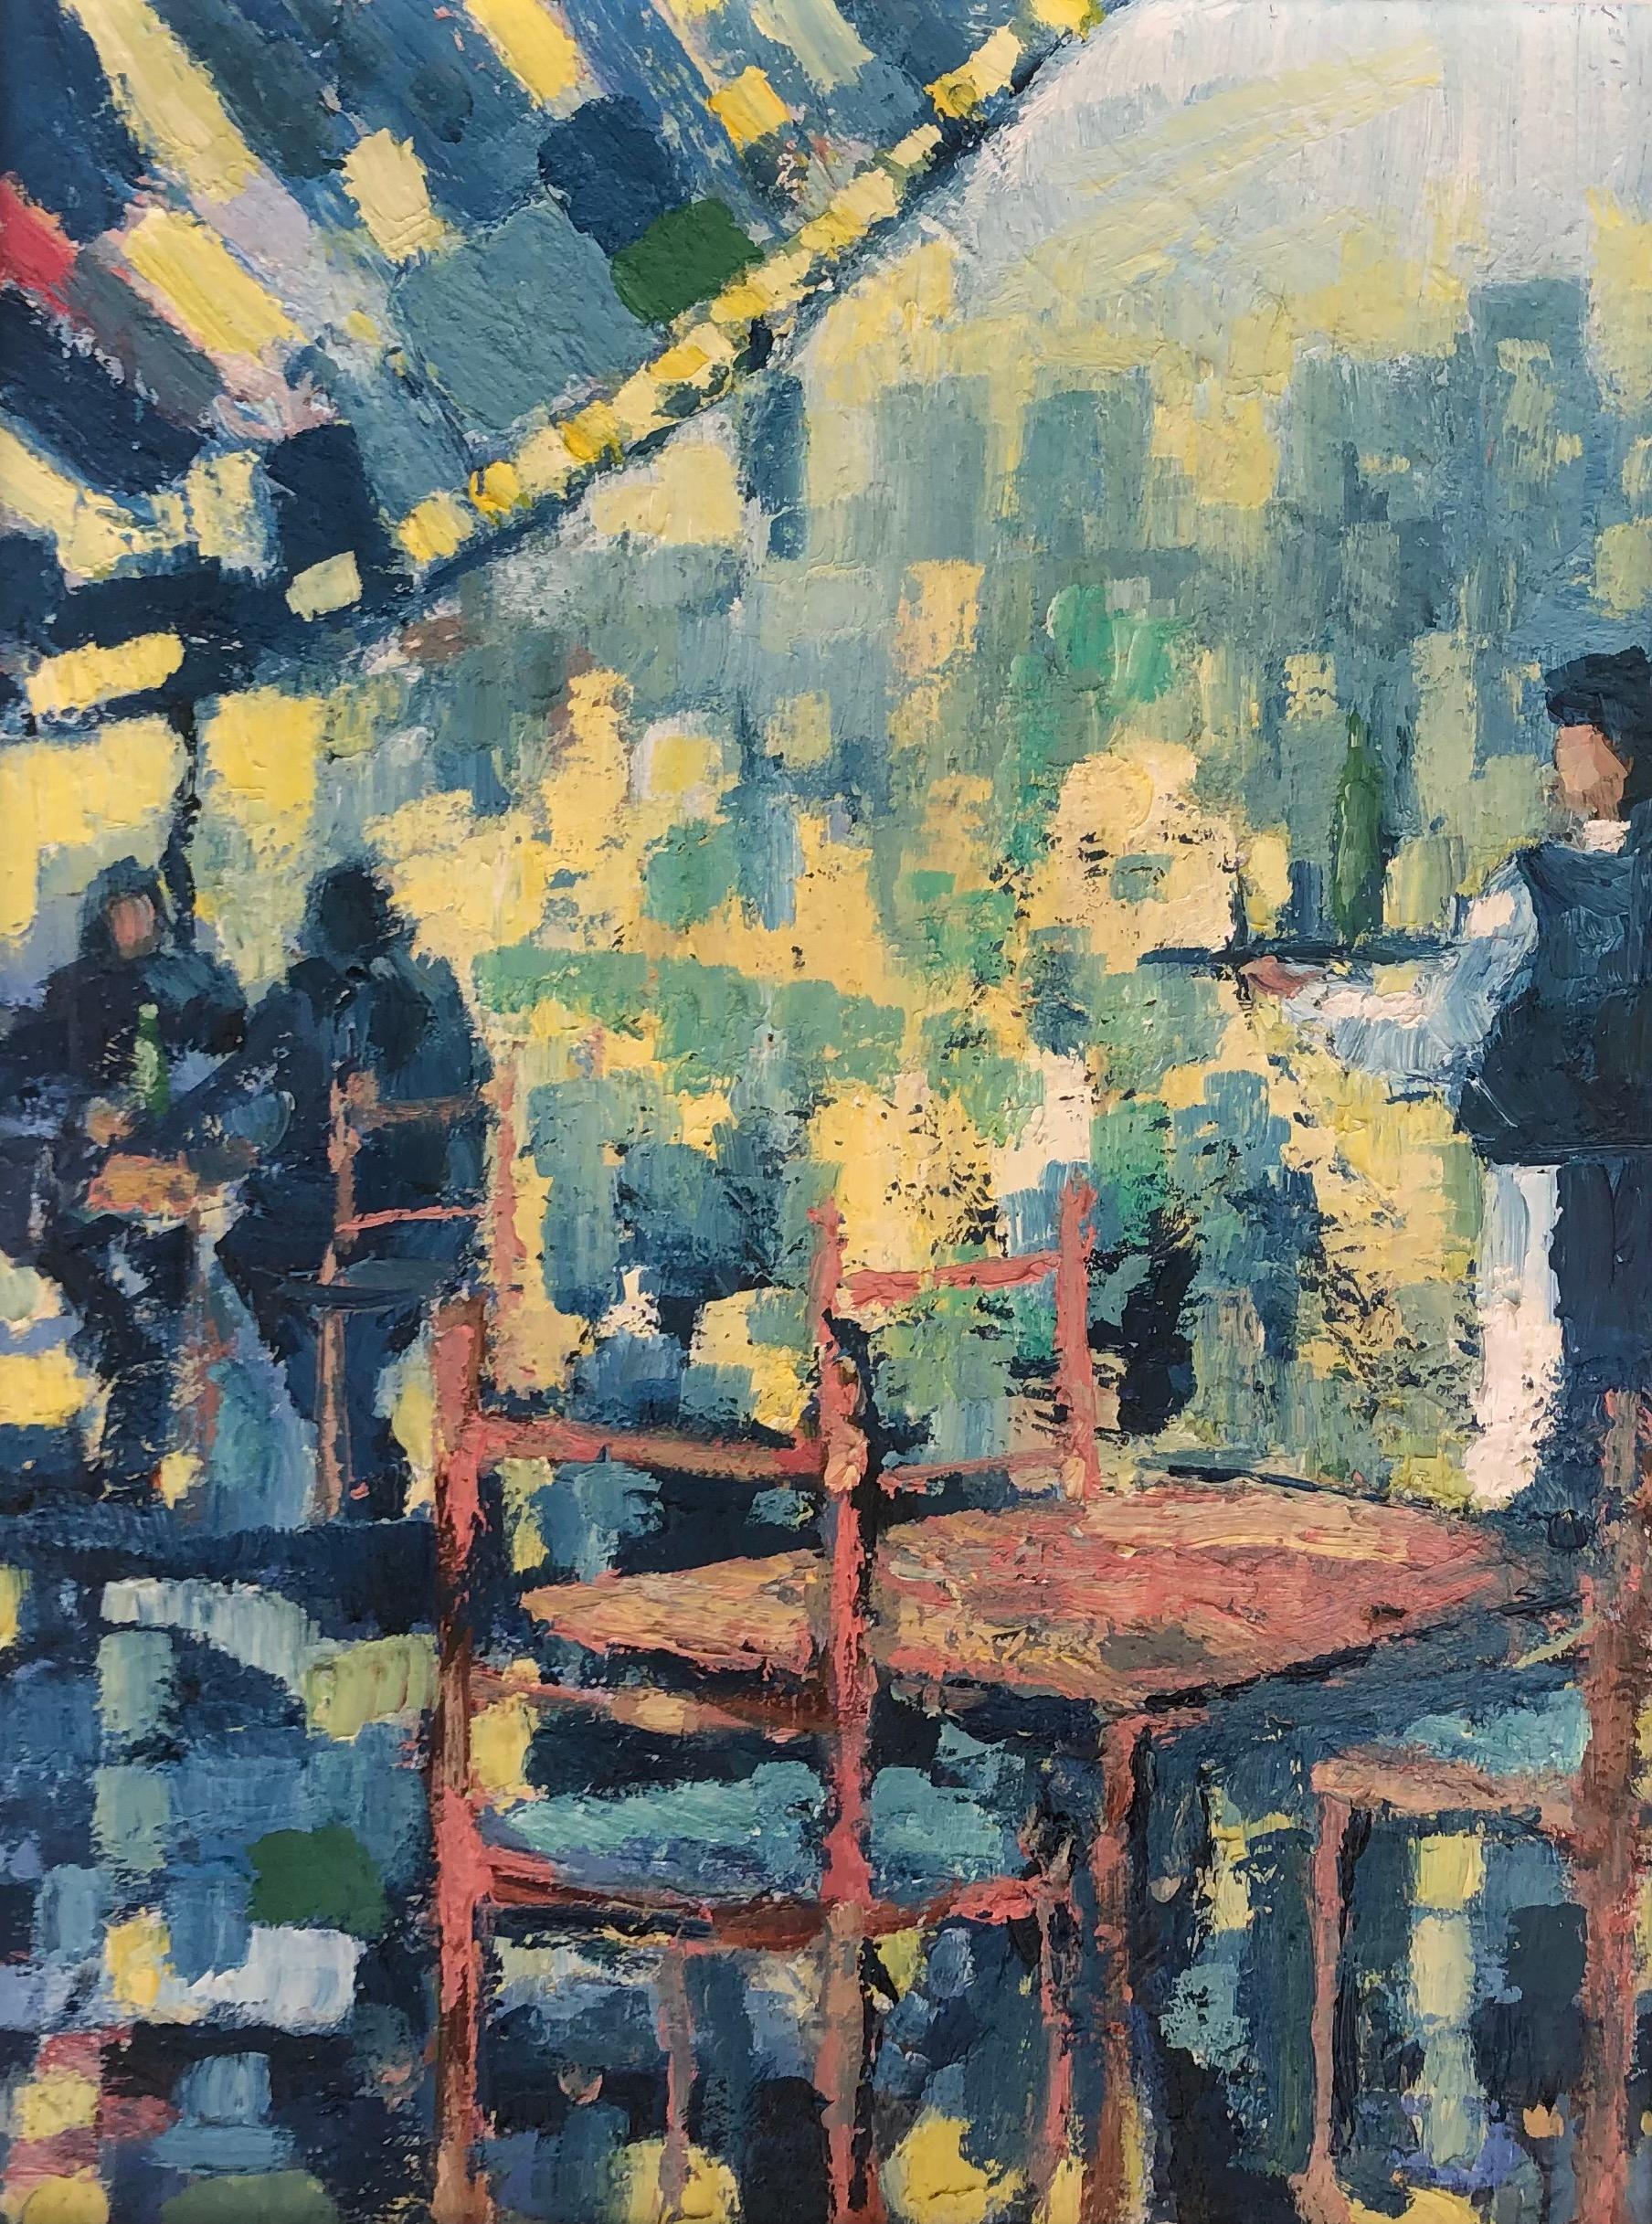 Richard Gower Landscape Painting – Cafe Society-originale impressionistische figurative Stadtbildmalerei-zeitgenössisch